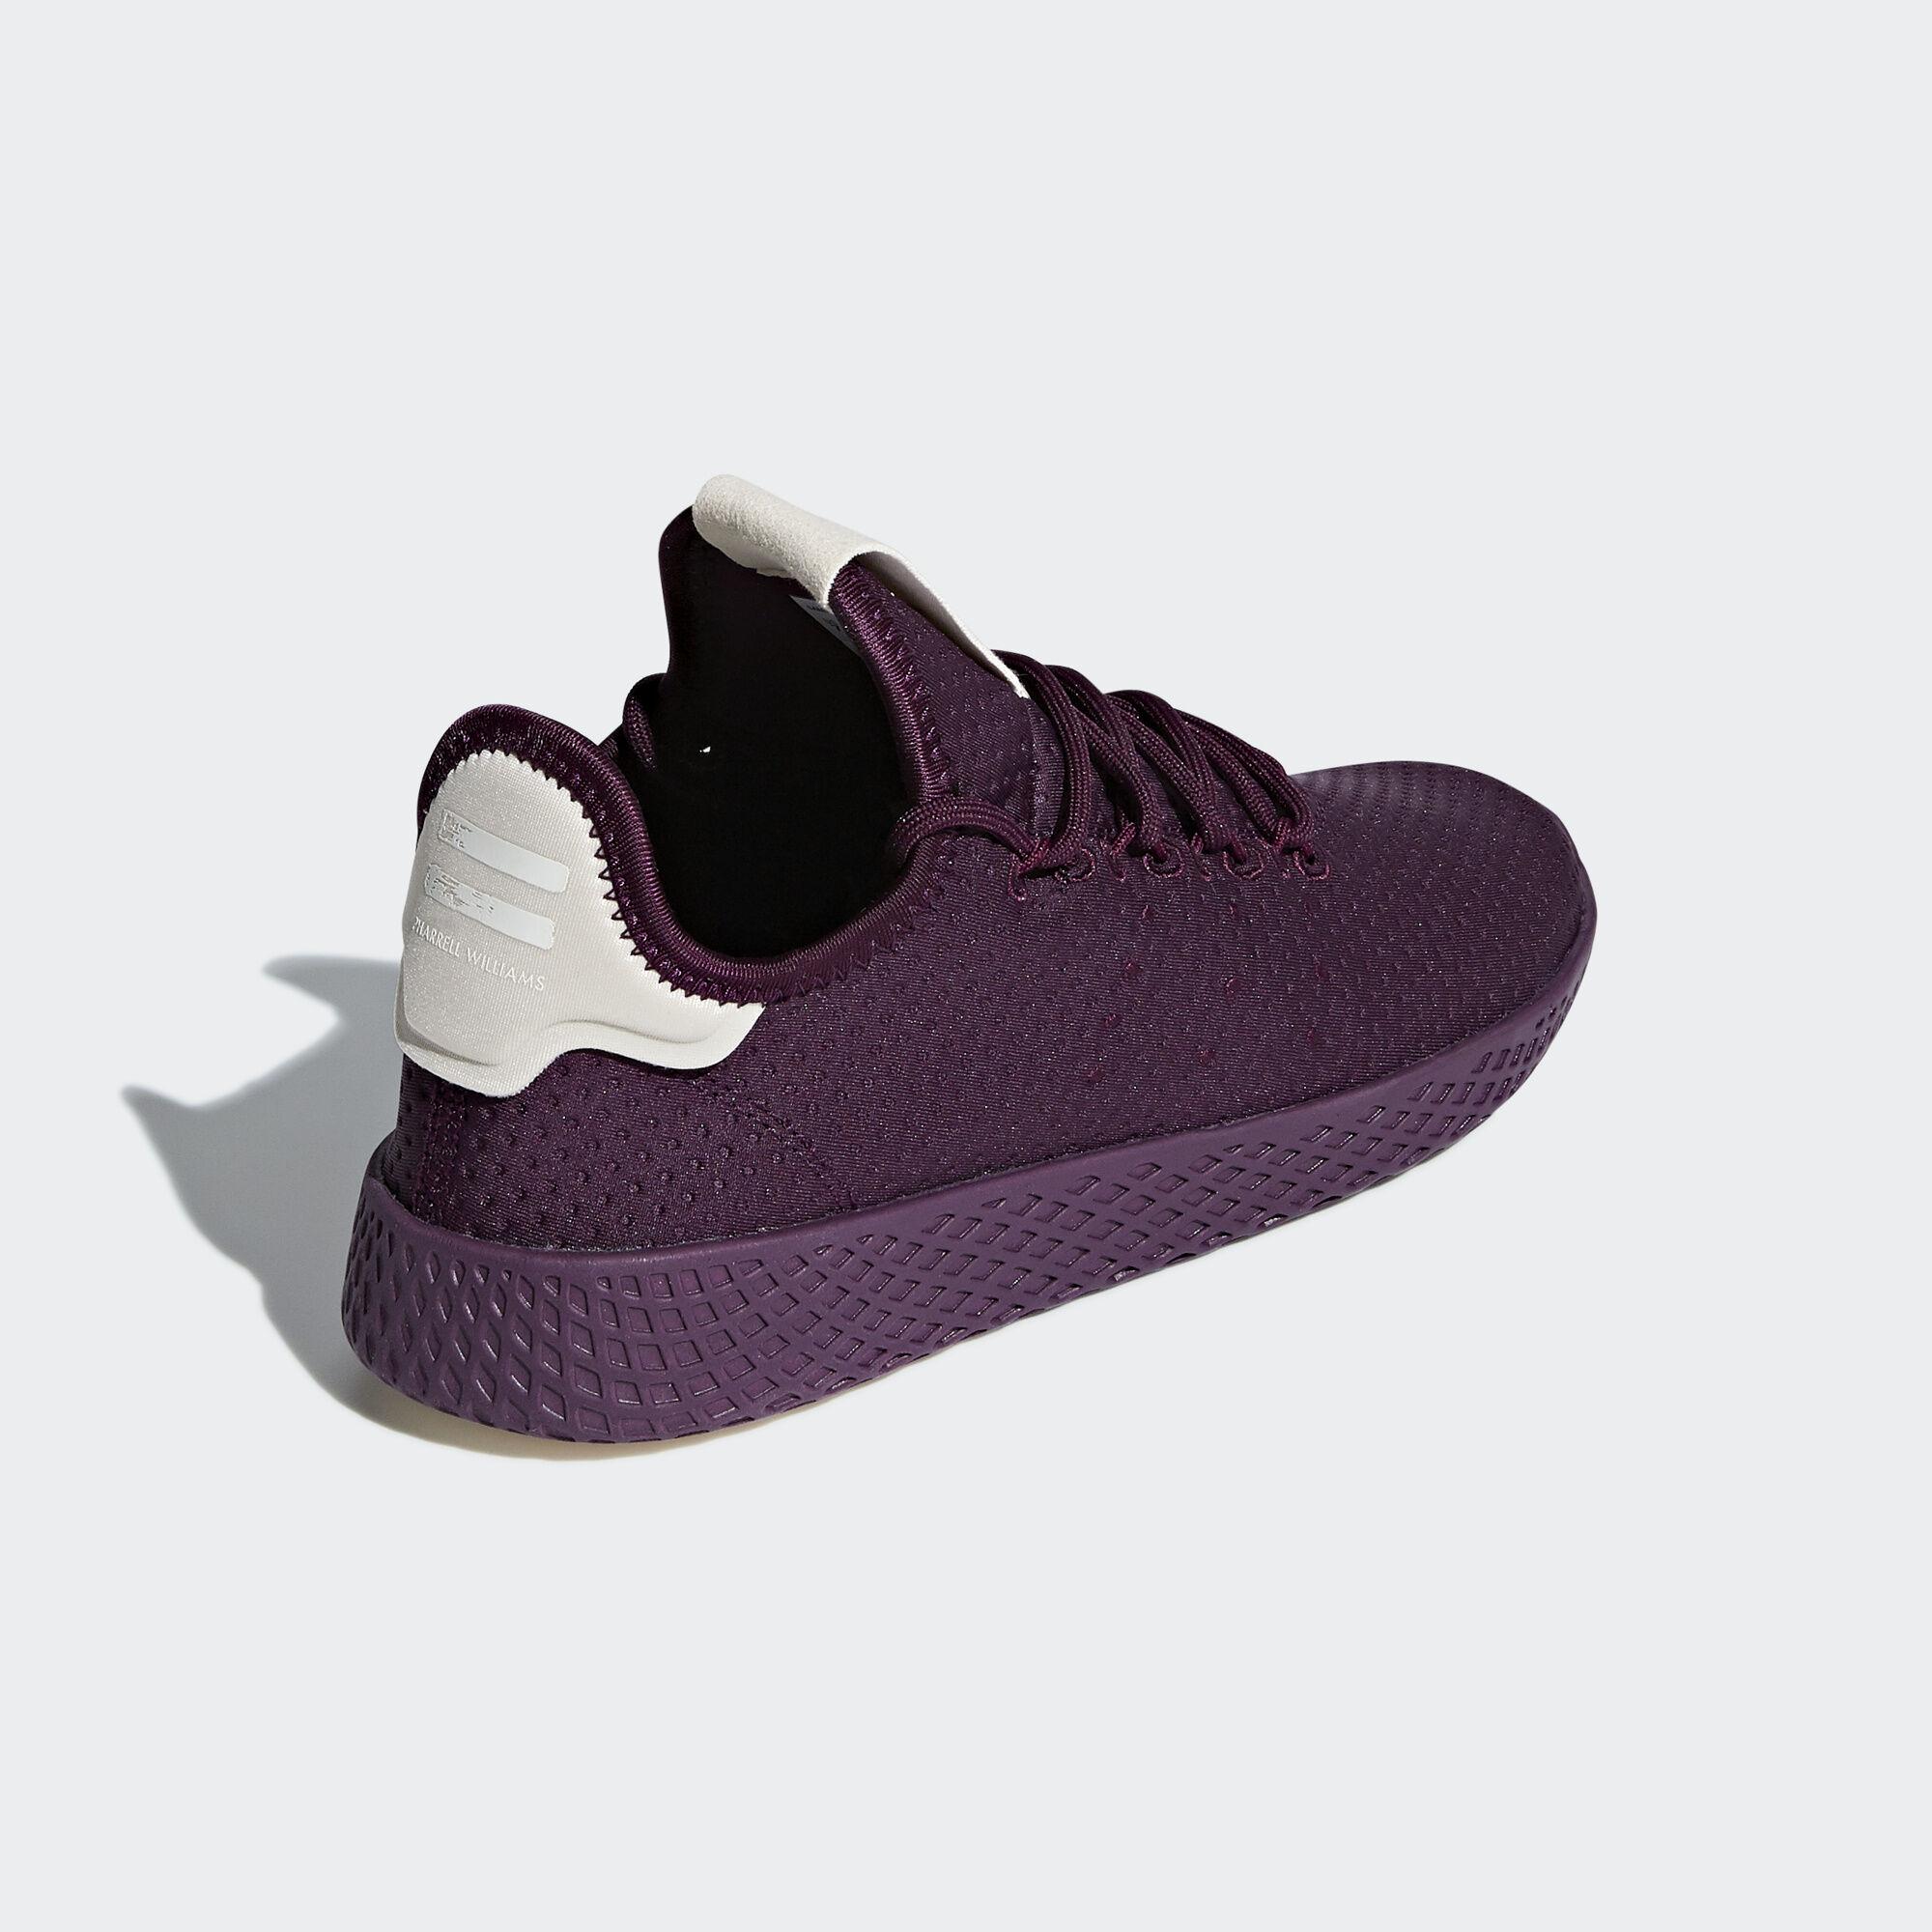 adidas pharrell williams tennis hu purple